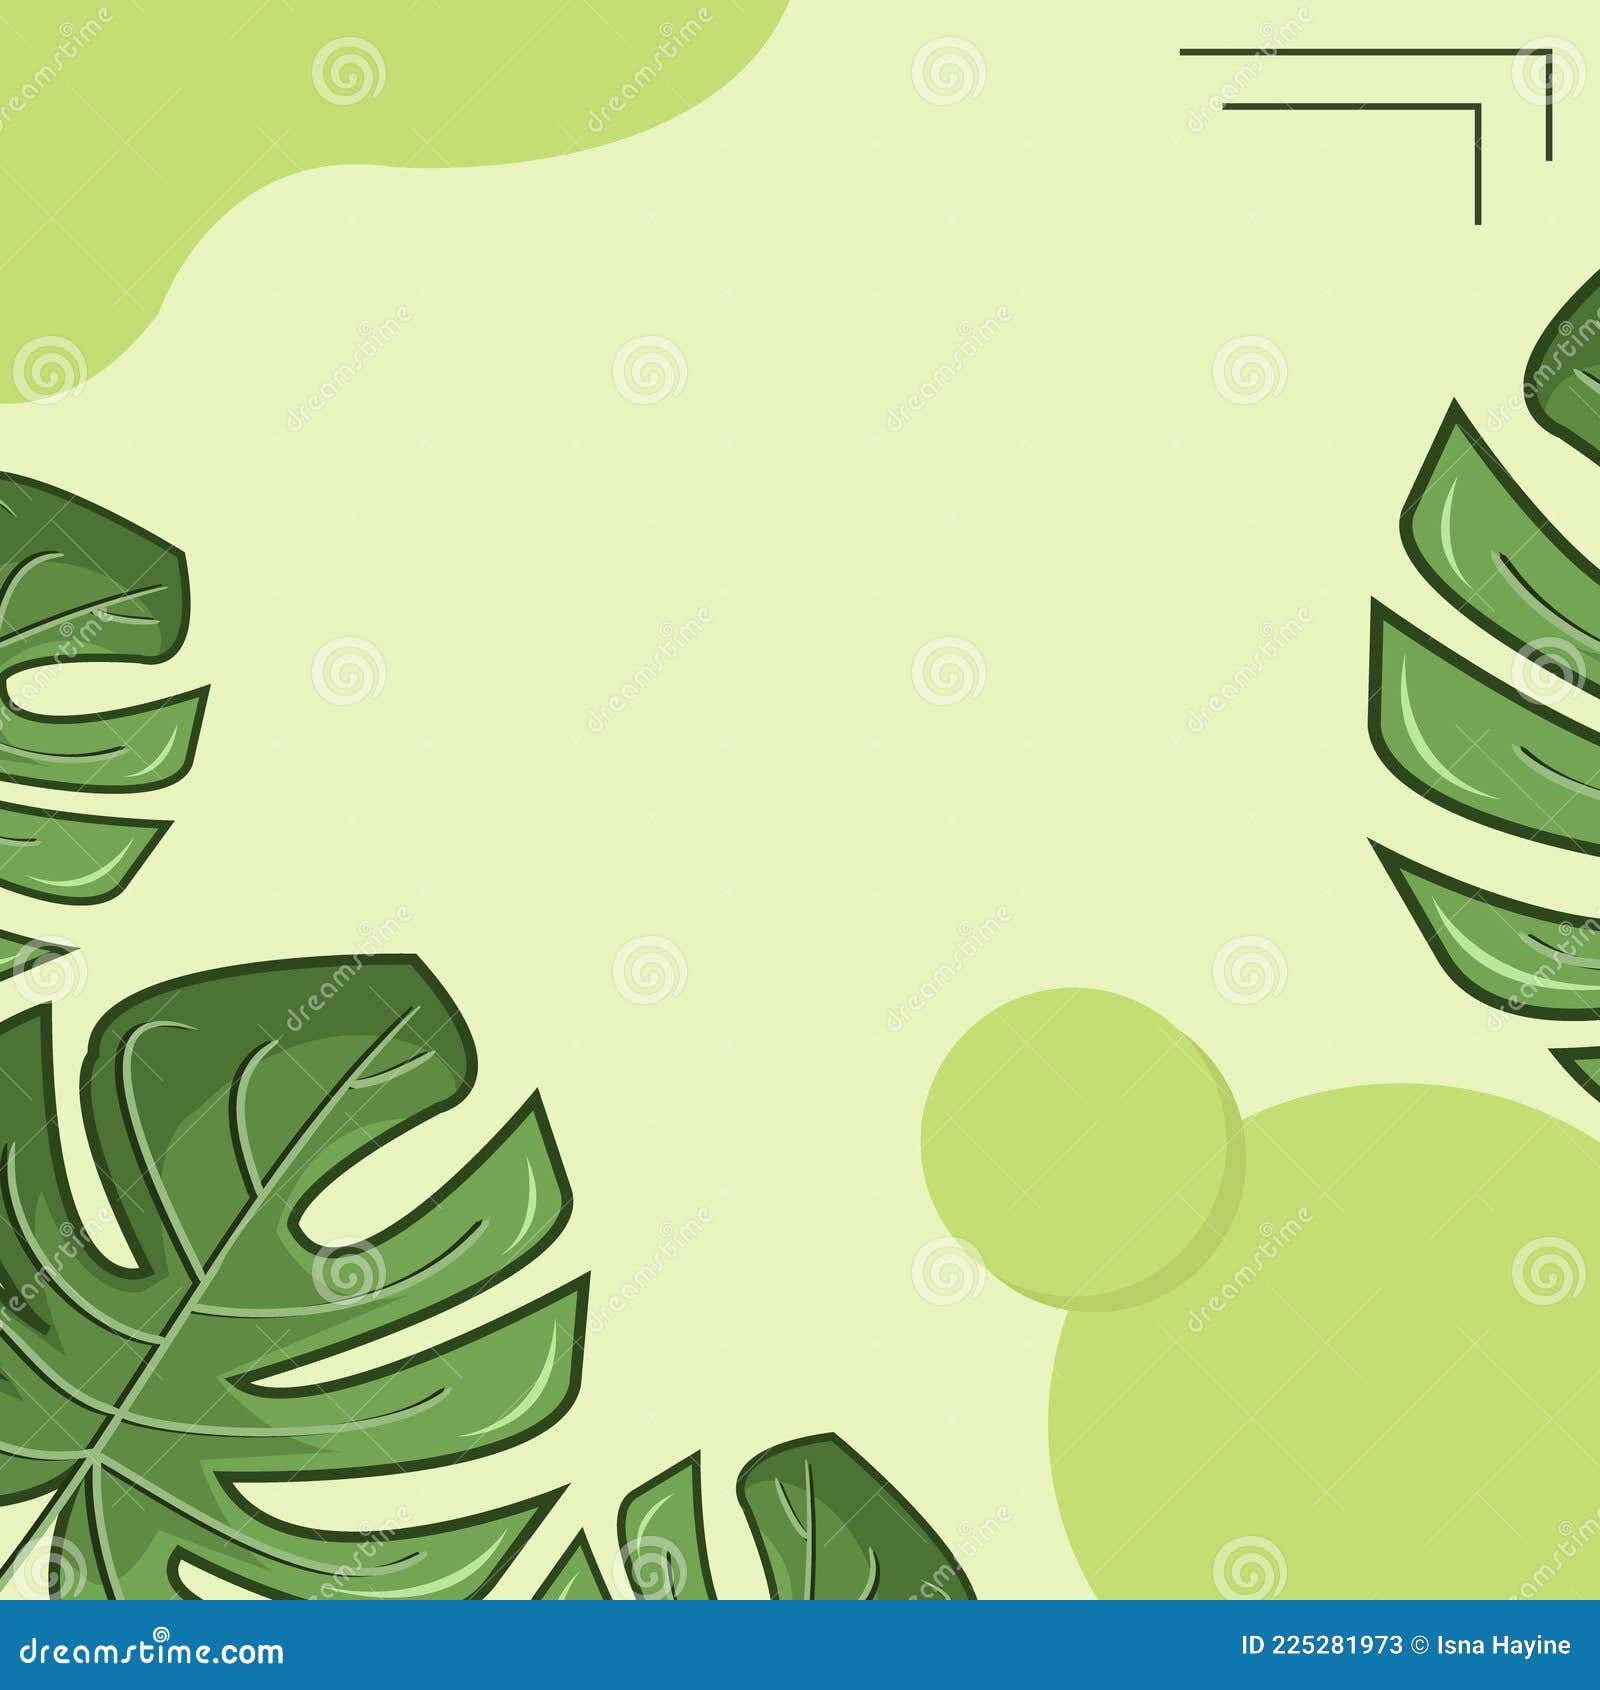 Được lấy cảm hứng từ thiên nhiên thơ mộng, những Illustration of Green Leaves Background sẽ khiến bạn cảm thấy thư thái, tươi mới và đầy sinh lực. Hãy để trái tim của bạn được thăng hoa trong không gian xanh lá cây.